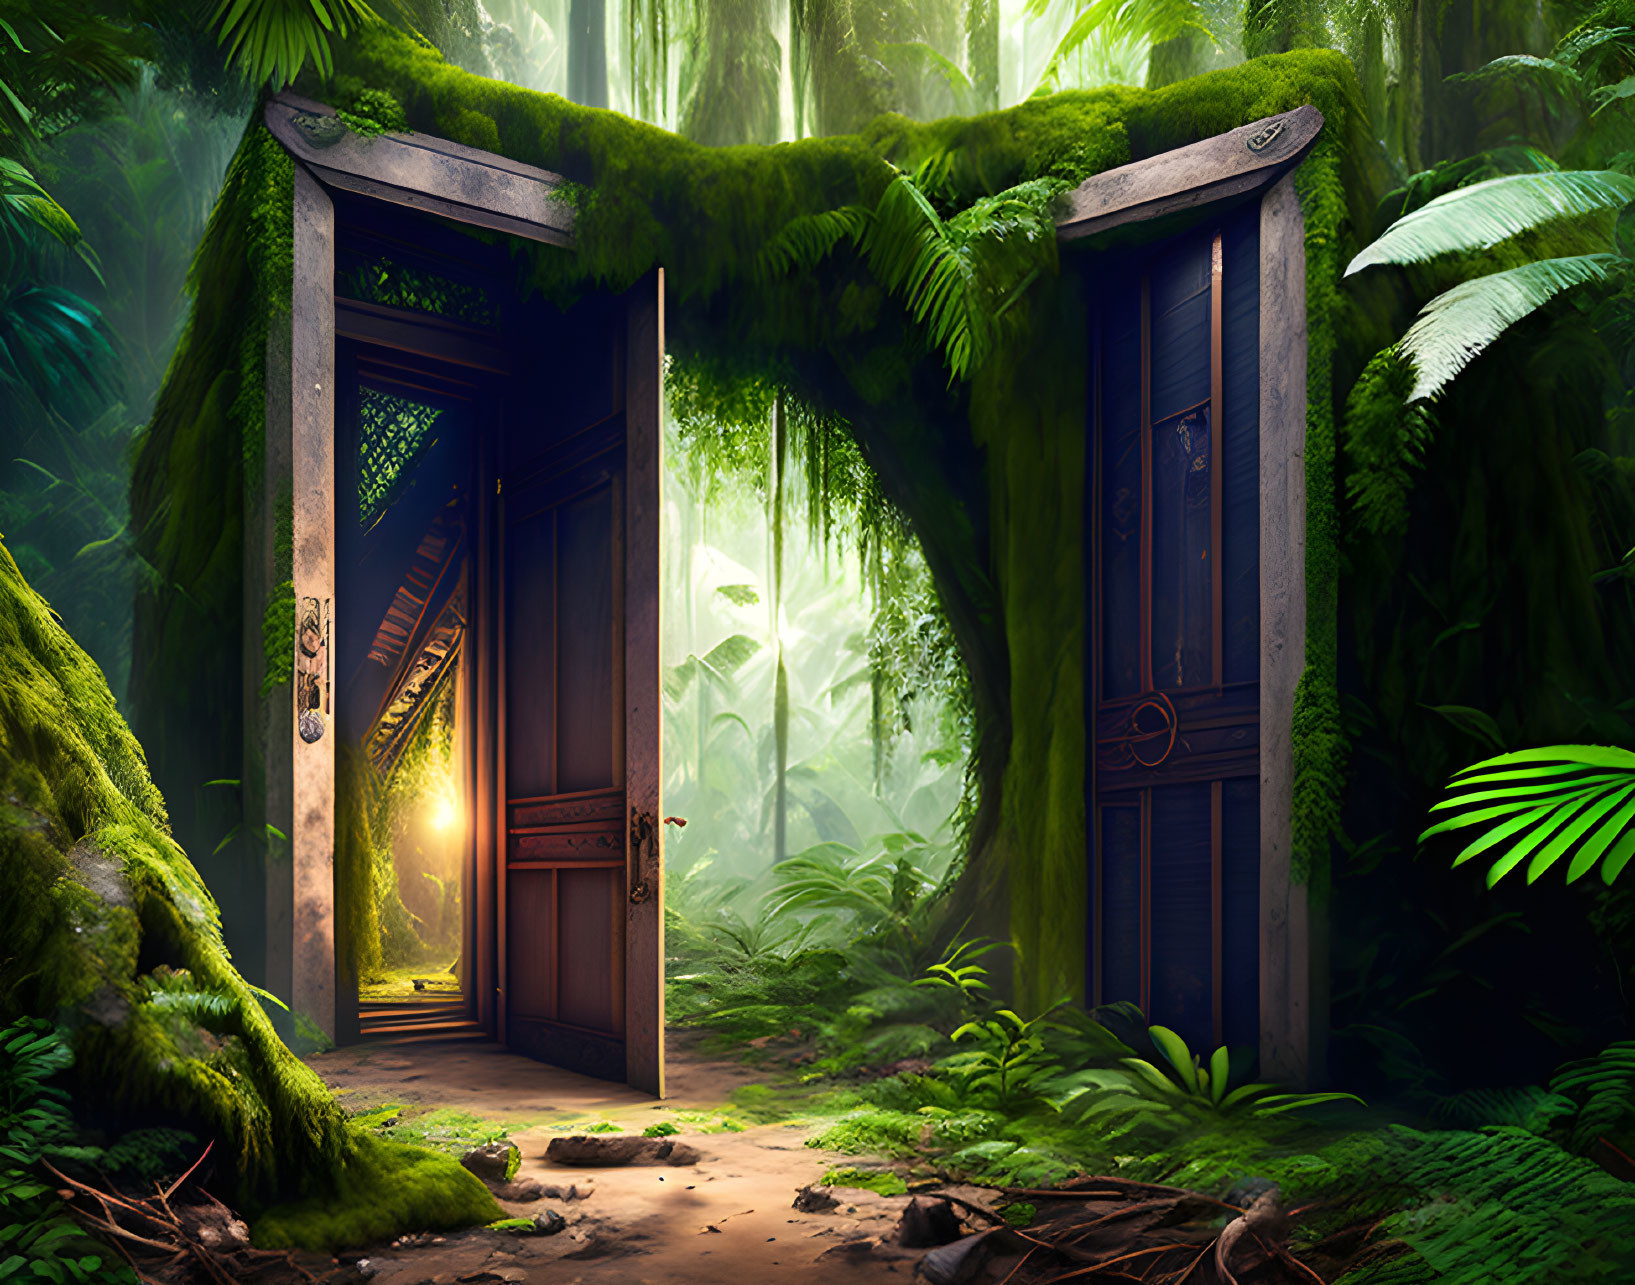 Sunlit forest scene with open wooden door